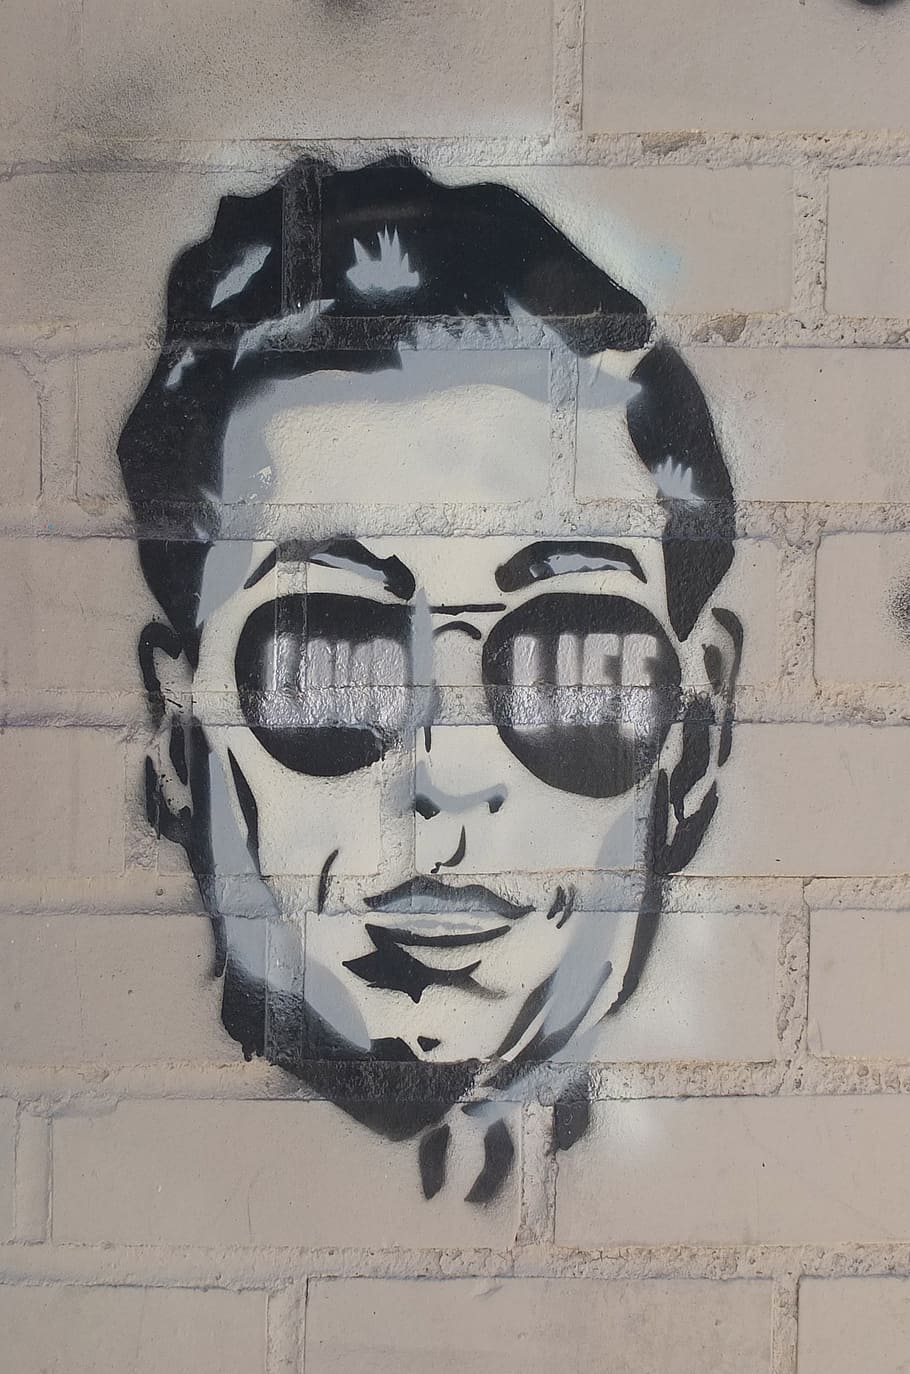 laki-laki, mengenakan, kacamata hitam bergaya graffiti karya seni, stensil, new york, wajah, grafiti, propaganda, dinding, seni dan kerajinan